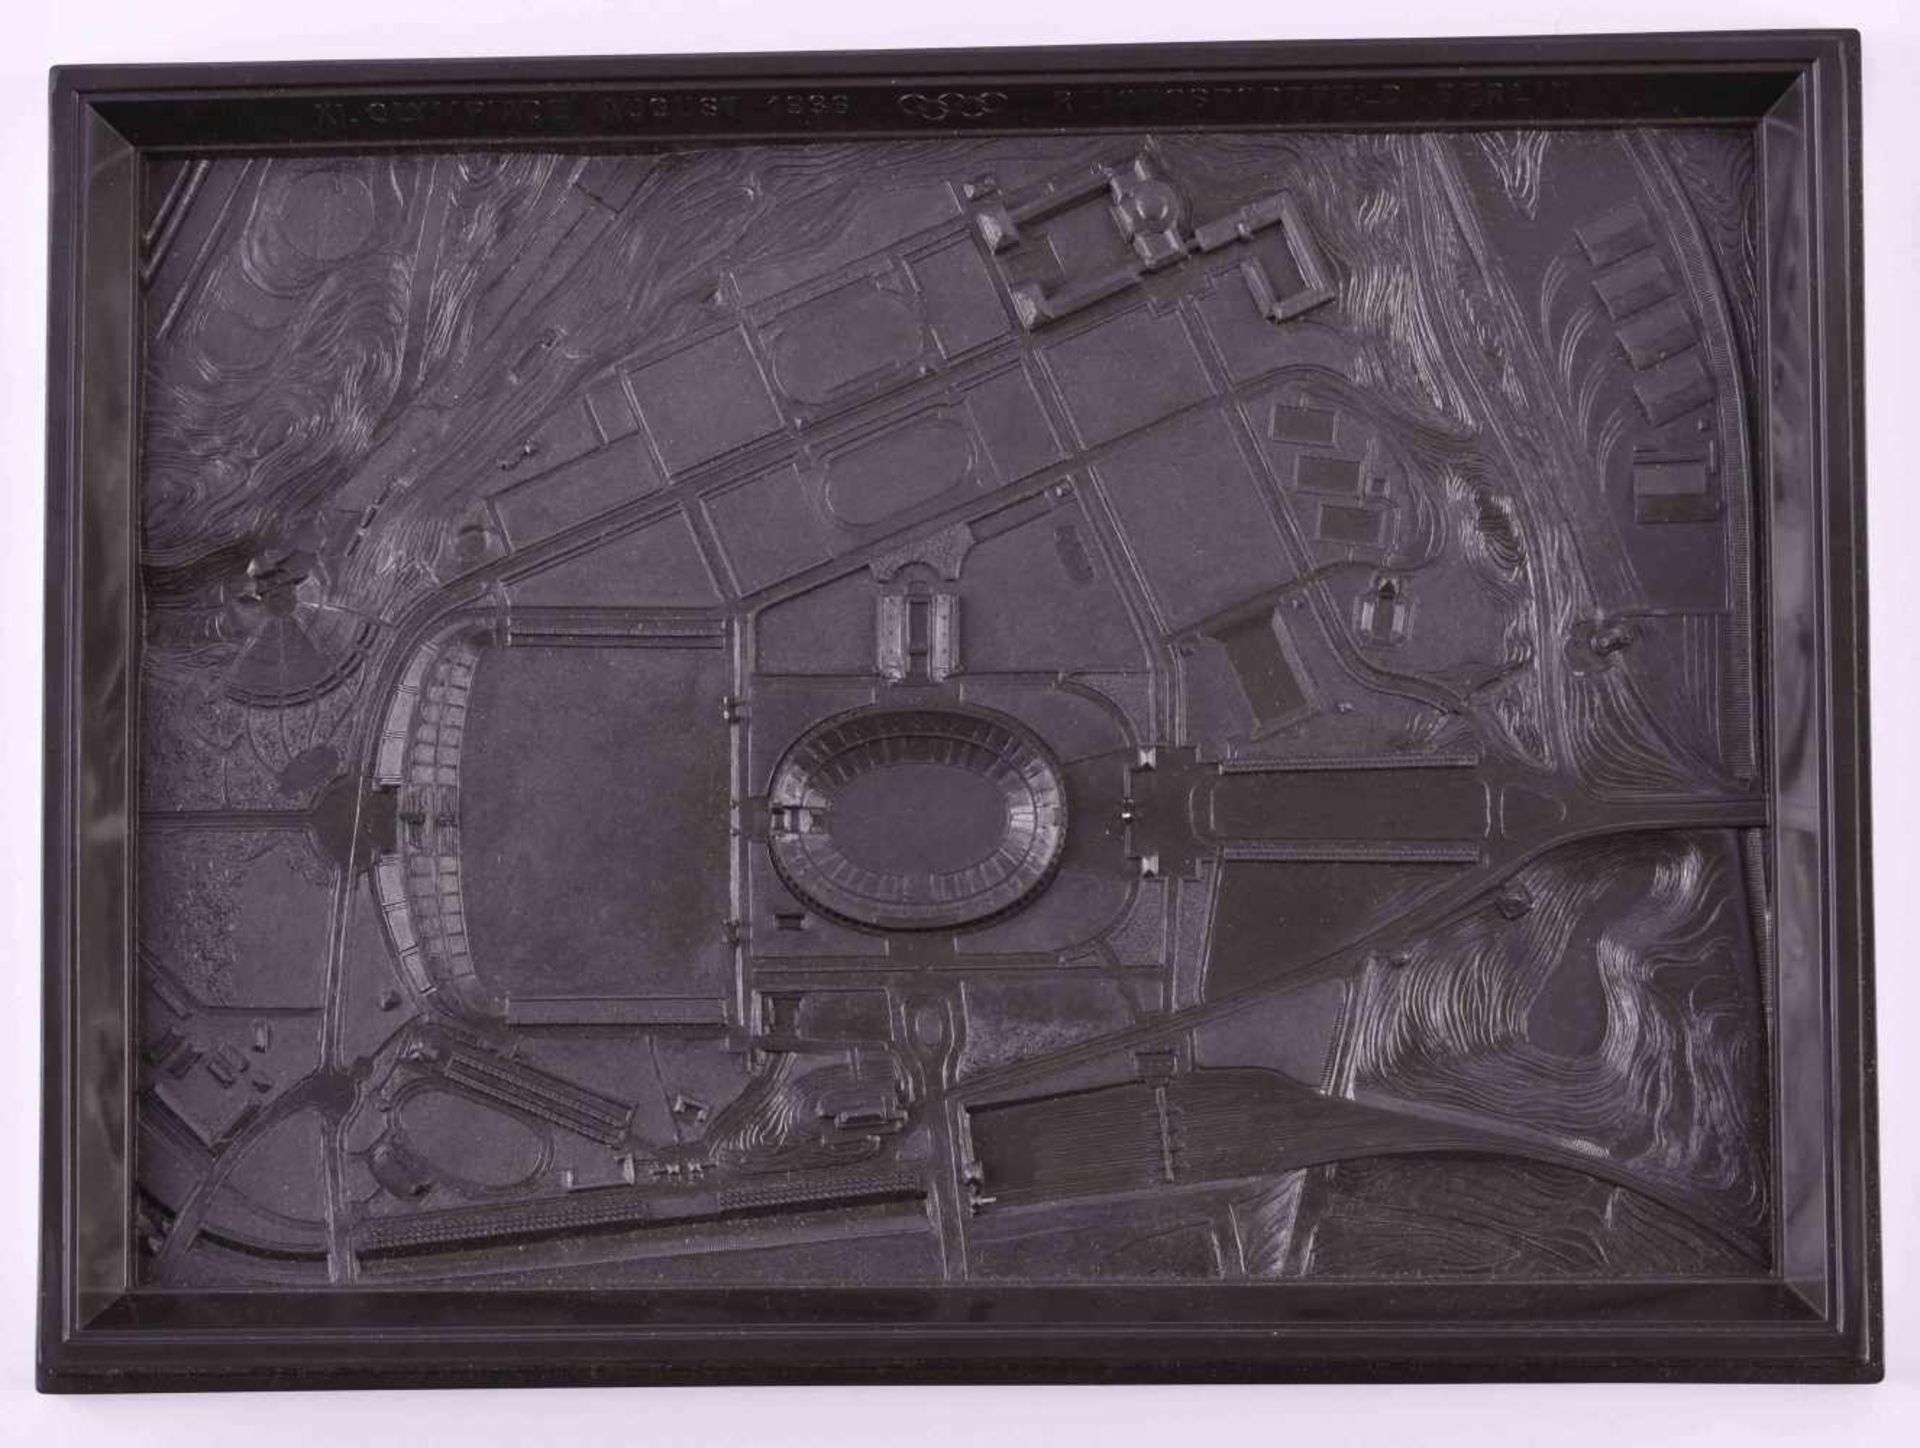 Reichssportfeld Olympia 1936Bakelit, unbeschädigt, in original Verpackung, 21,5 cm x 28,5 cmReich - Bild 3 aus 4